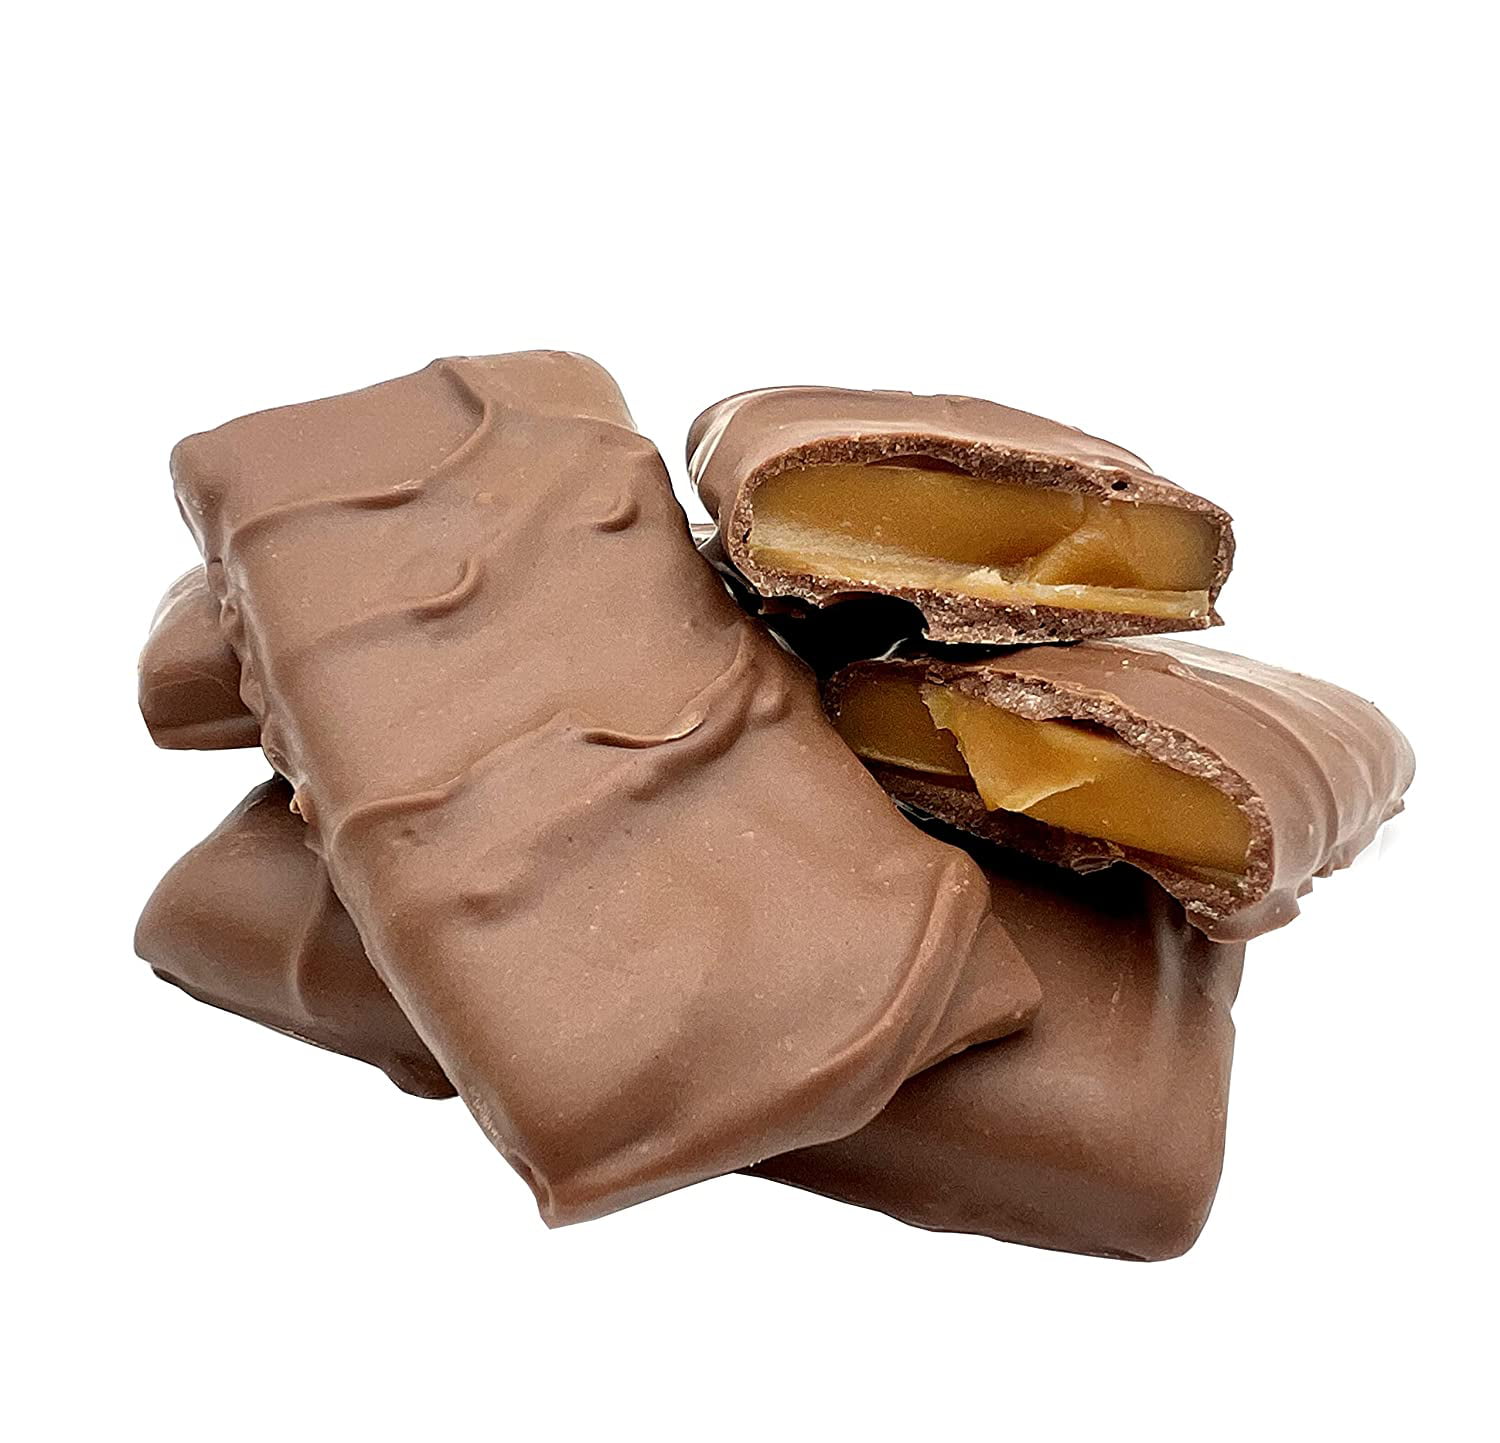 Comprar Chocopuros de chocolate con leche, Funtastyc Online